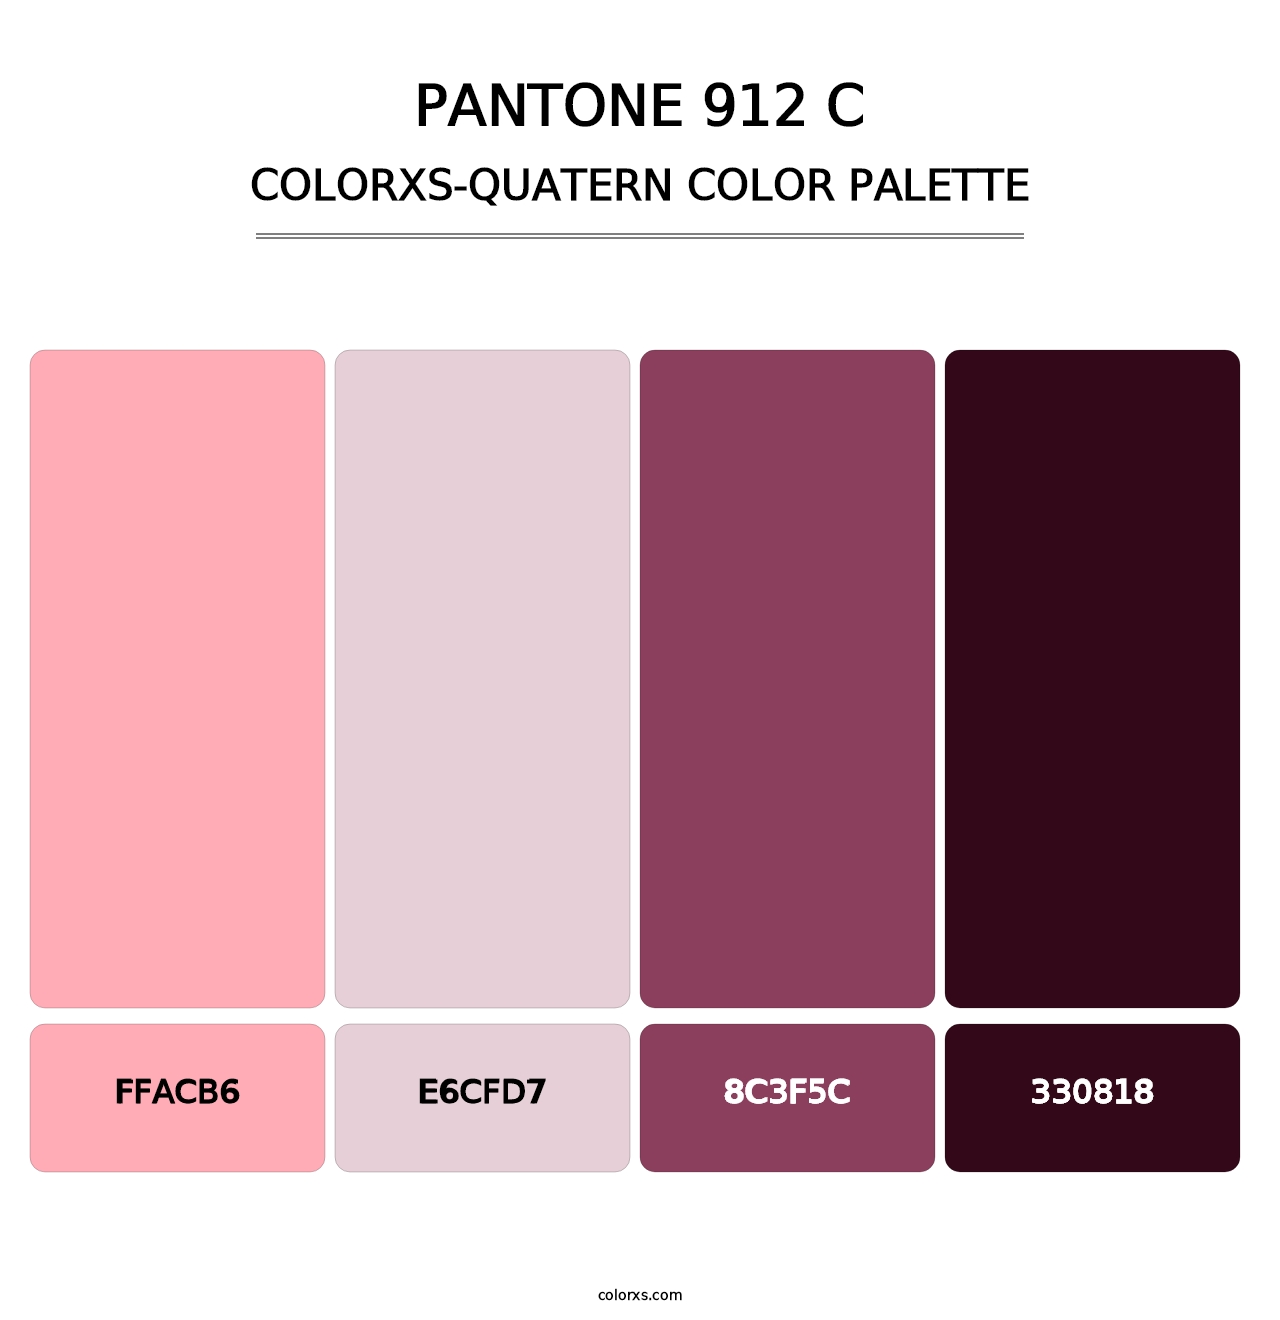 PANTONE 912 C - Colorxs Quatern Palette